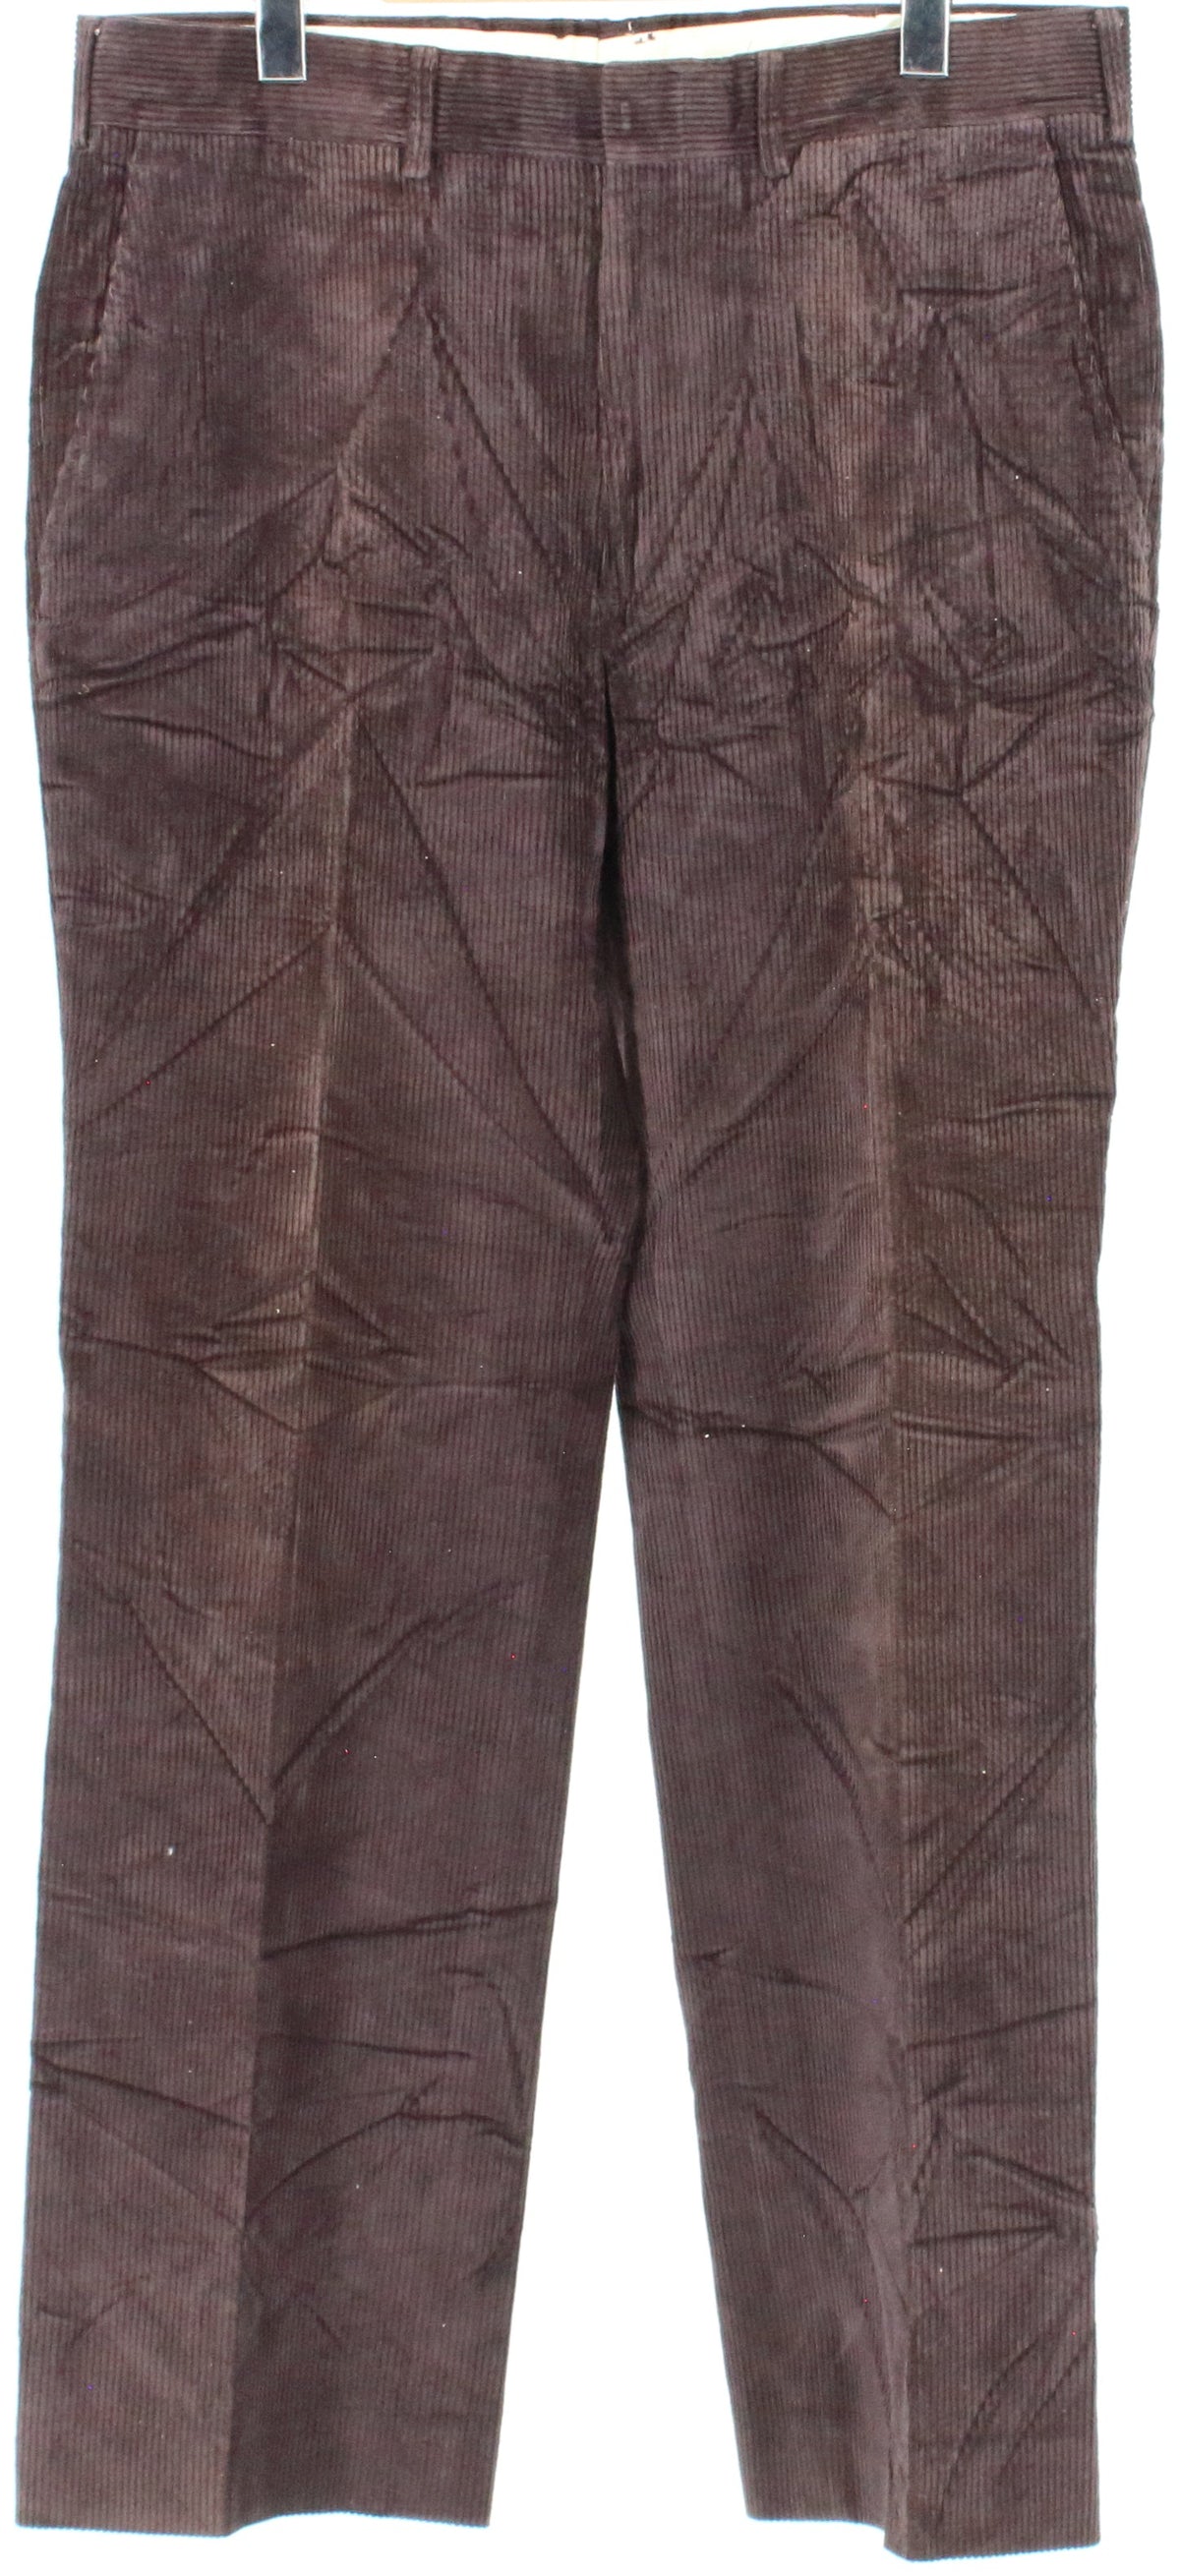 L.L.Bean Brown Corduroy Men's Pants